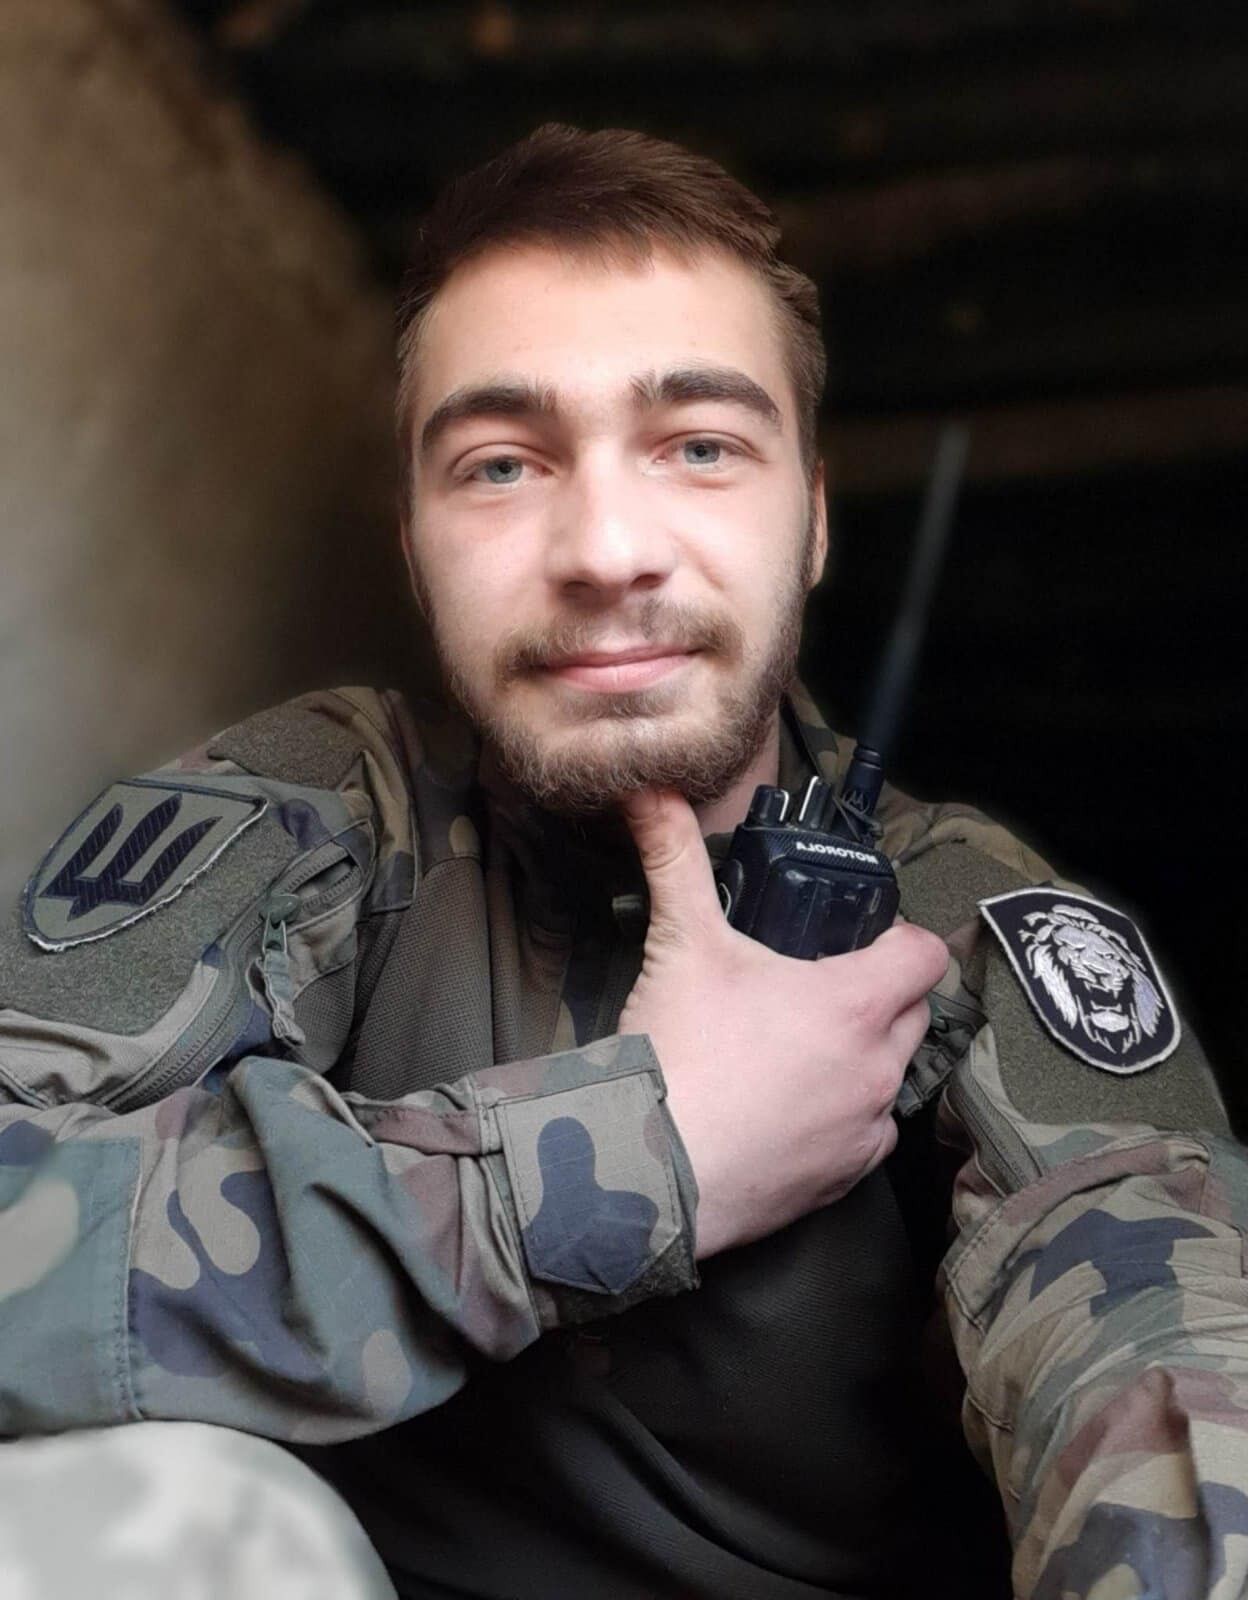 "Був світлою людиною з гумором": у боях за Україну загинув молодий захисник з Кривого Рогу. Фото 